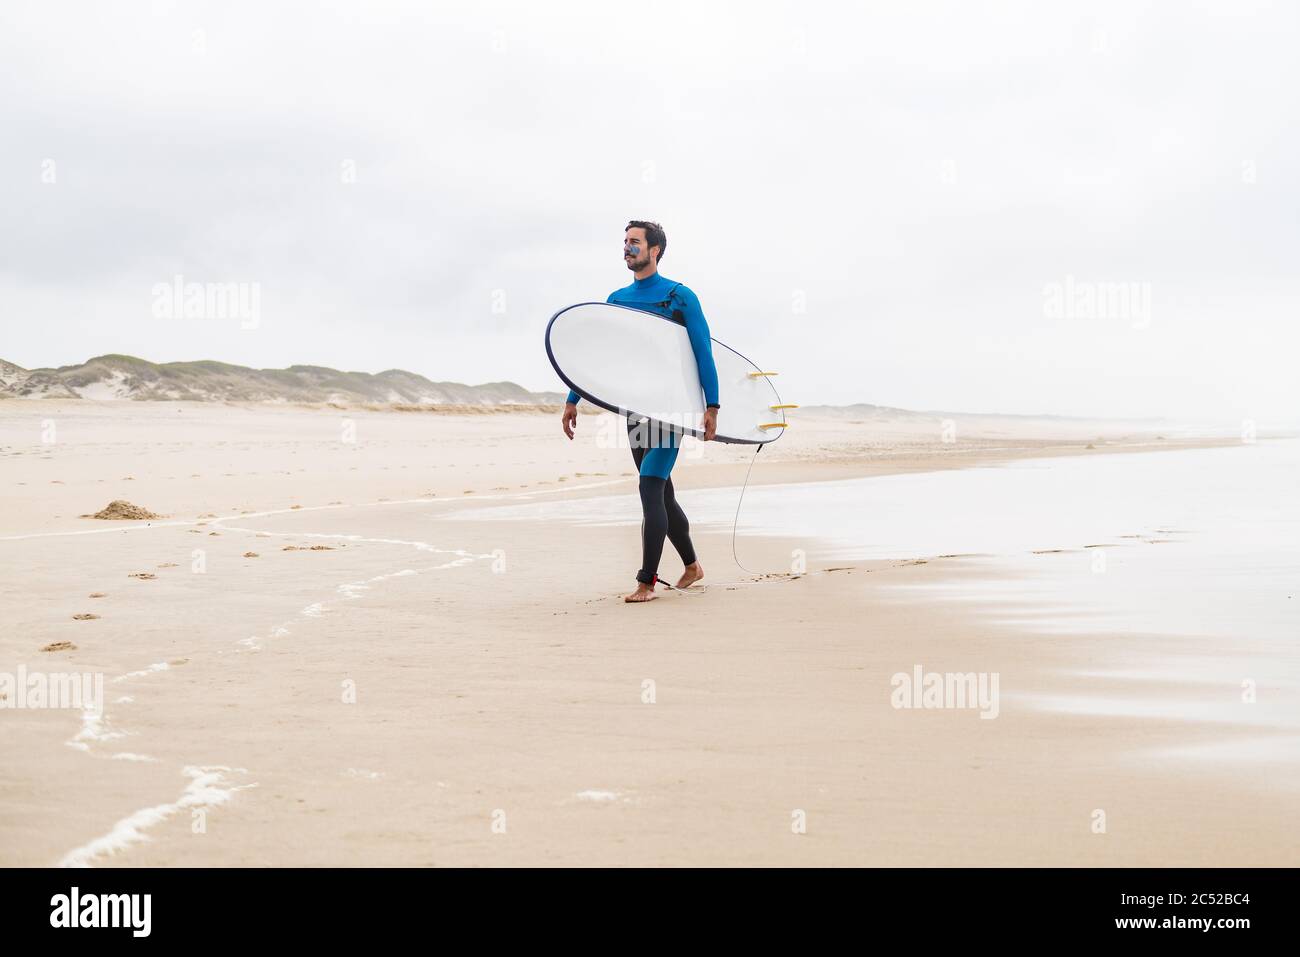 Un jeune surfeur mâle portant une combinaison, tenant une planche de surf sous son bras, marchant sur la plage après une séance de surf matinale. Banque D'Images